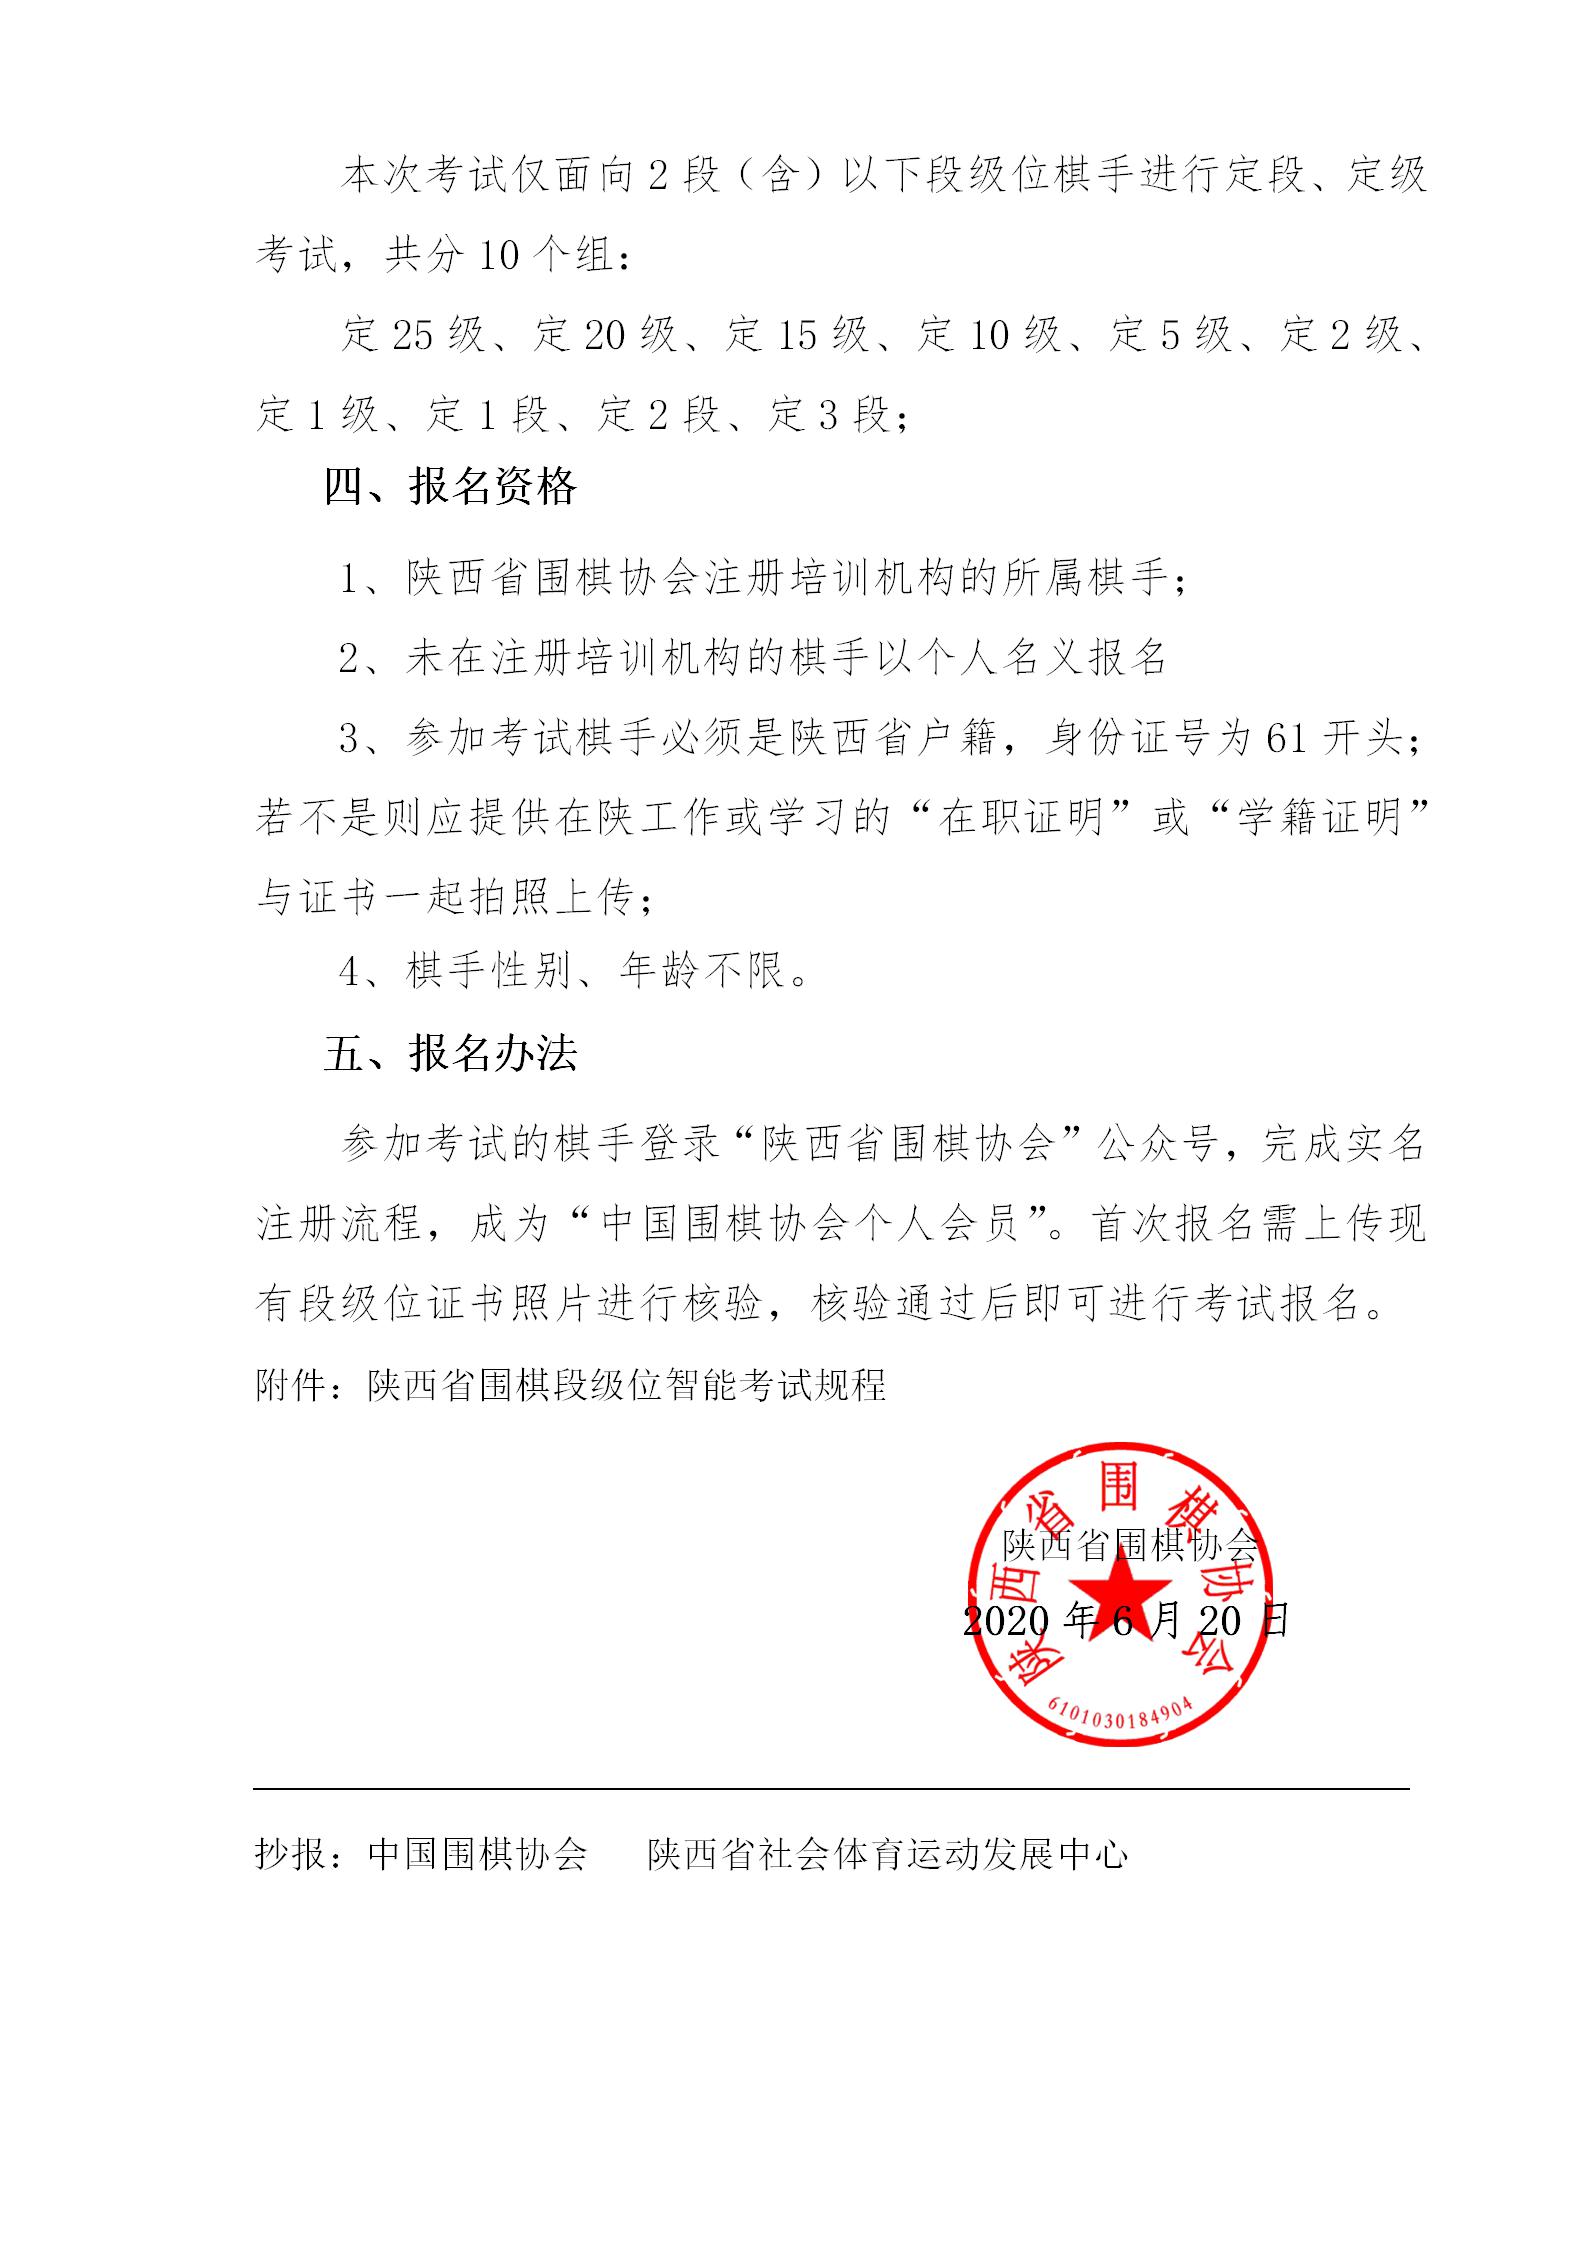 关于举办“陕西省围棋段级位智能考试”的通知0616(1)_02.jpg